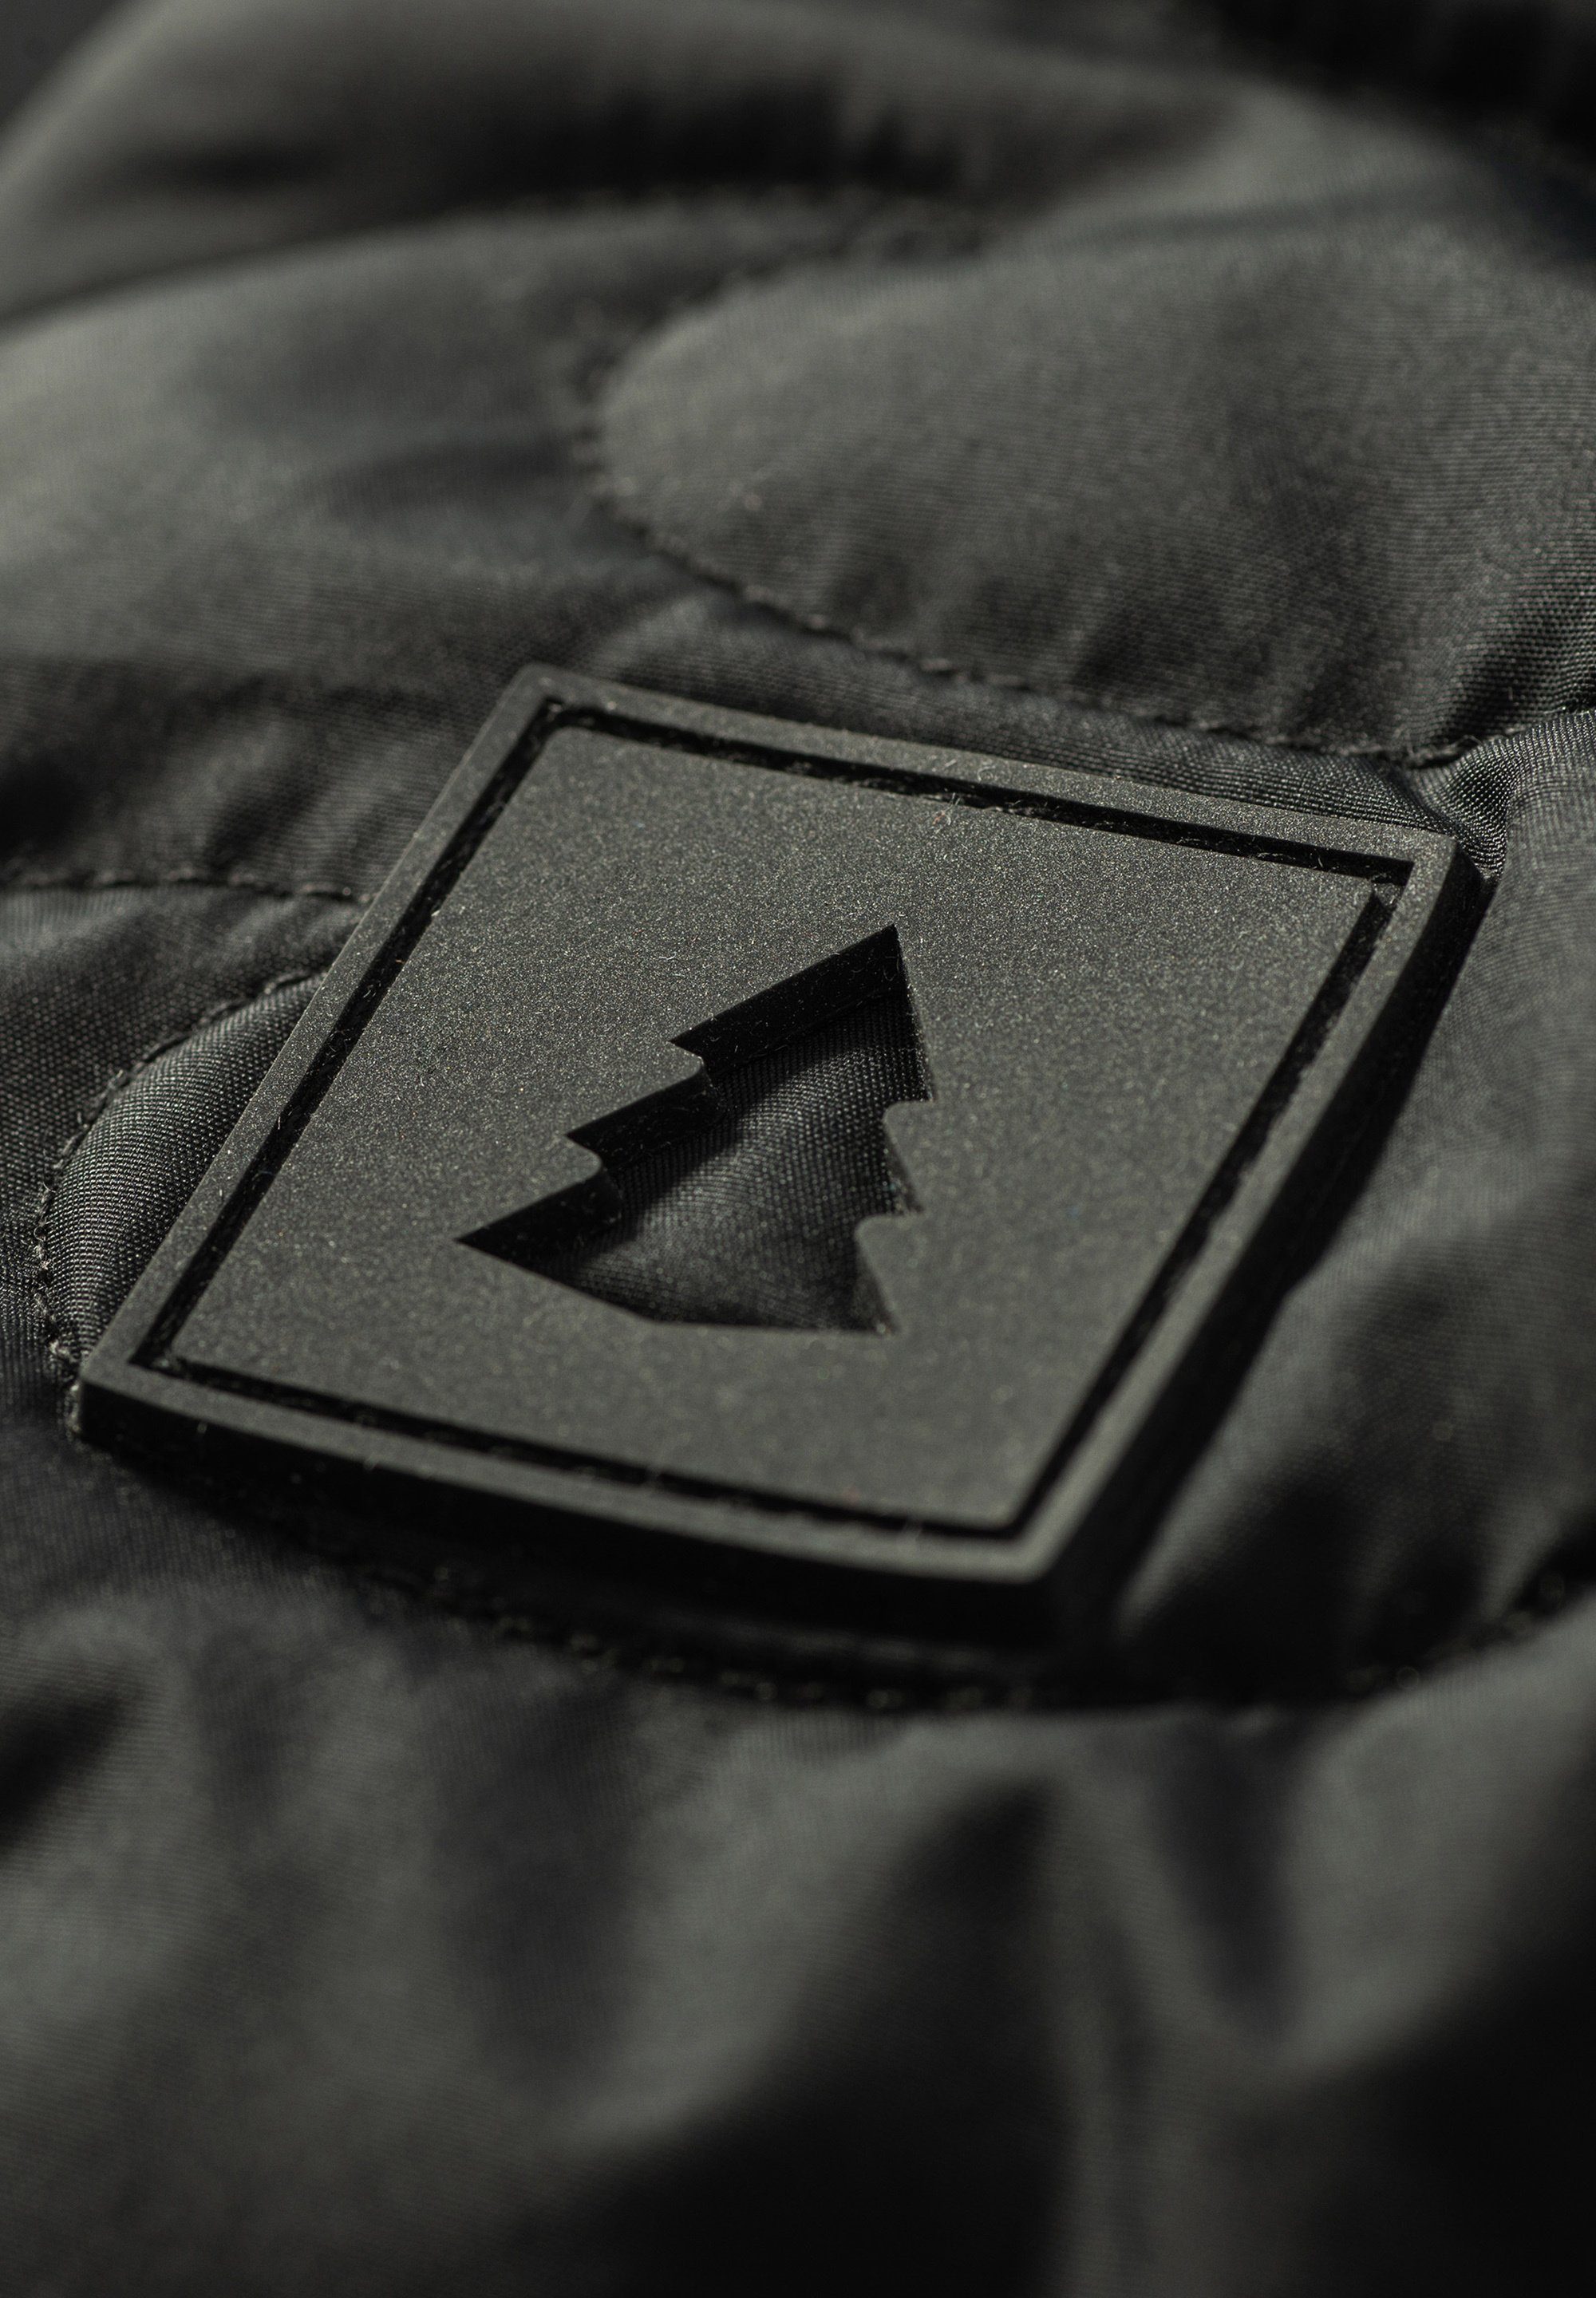 Insulated isolierten Mit und unserer Jacket Hemdjacke Pinetime Steppjacke sind New schwarz stilvoll gekleidet. Wave Sie warm Clothing